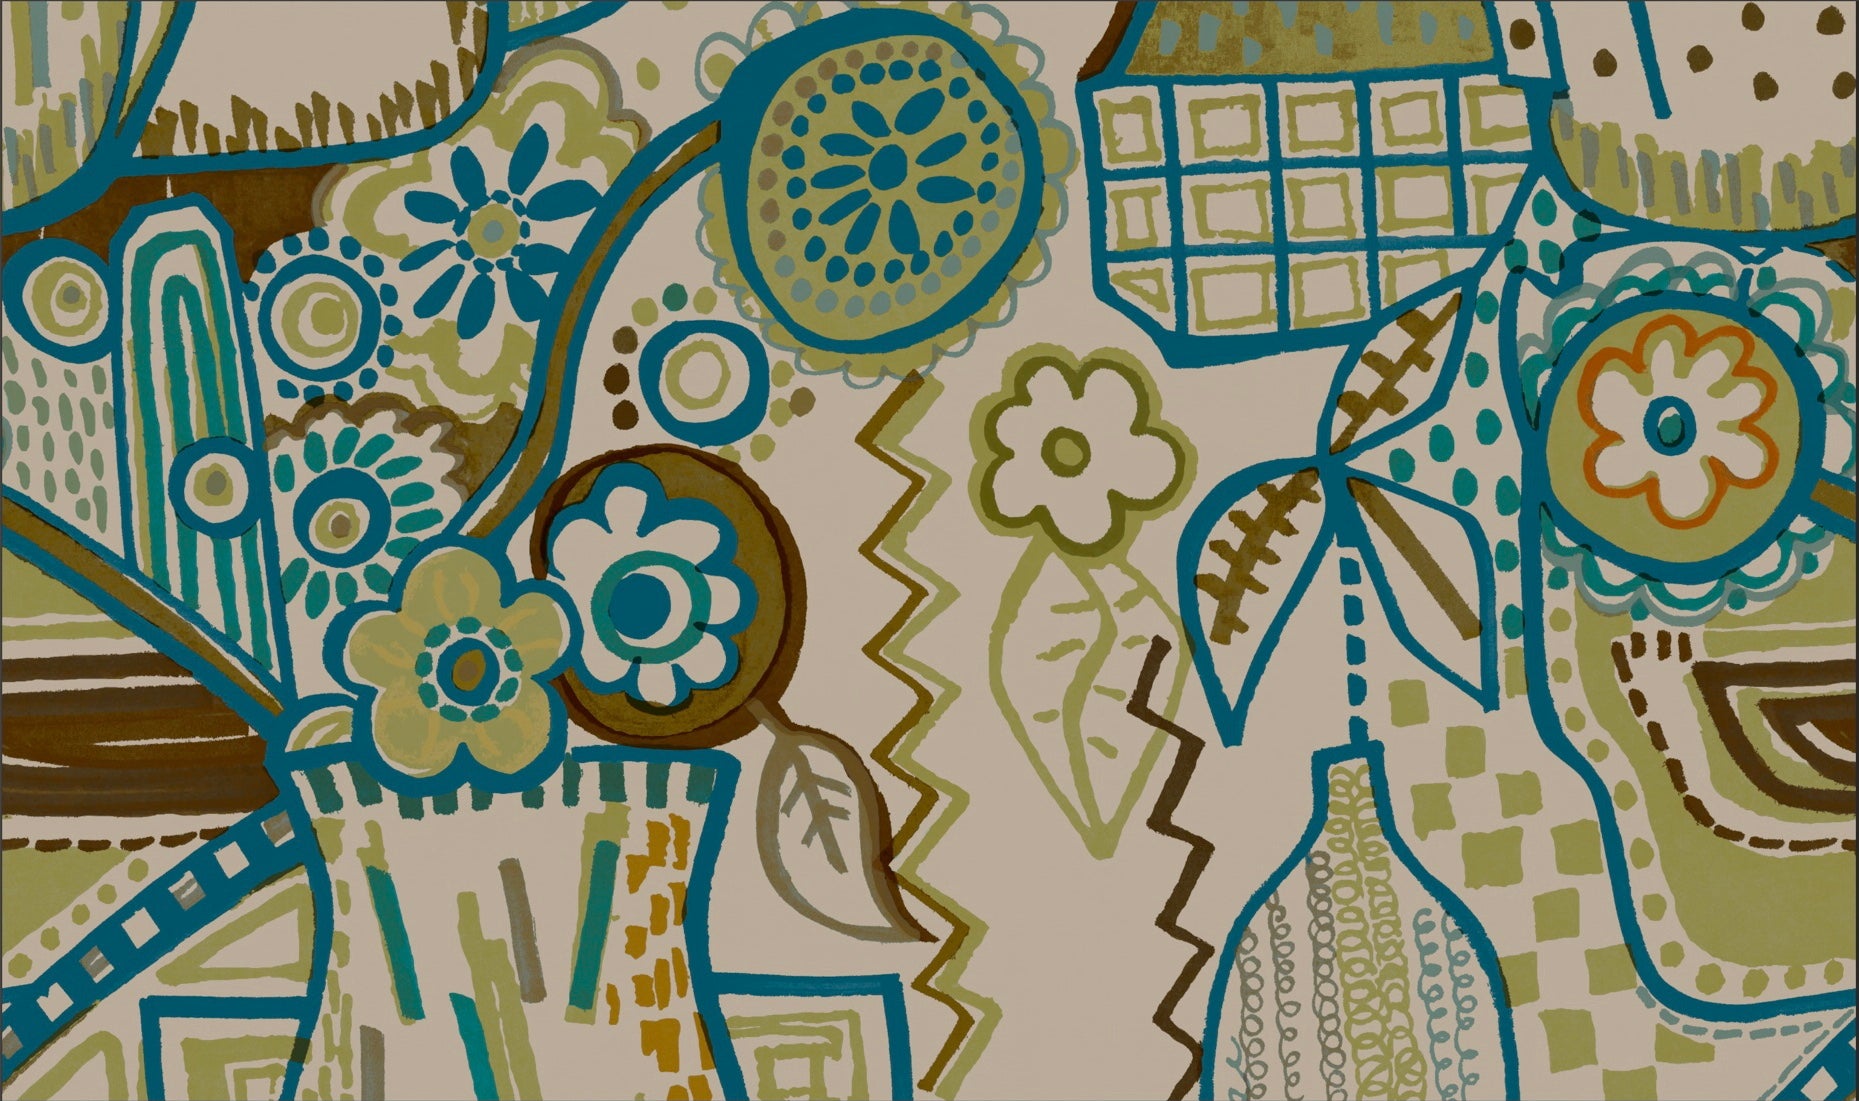 Still Life Wallpaper - Hydrangea